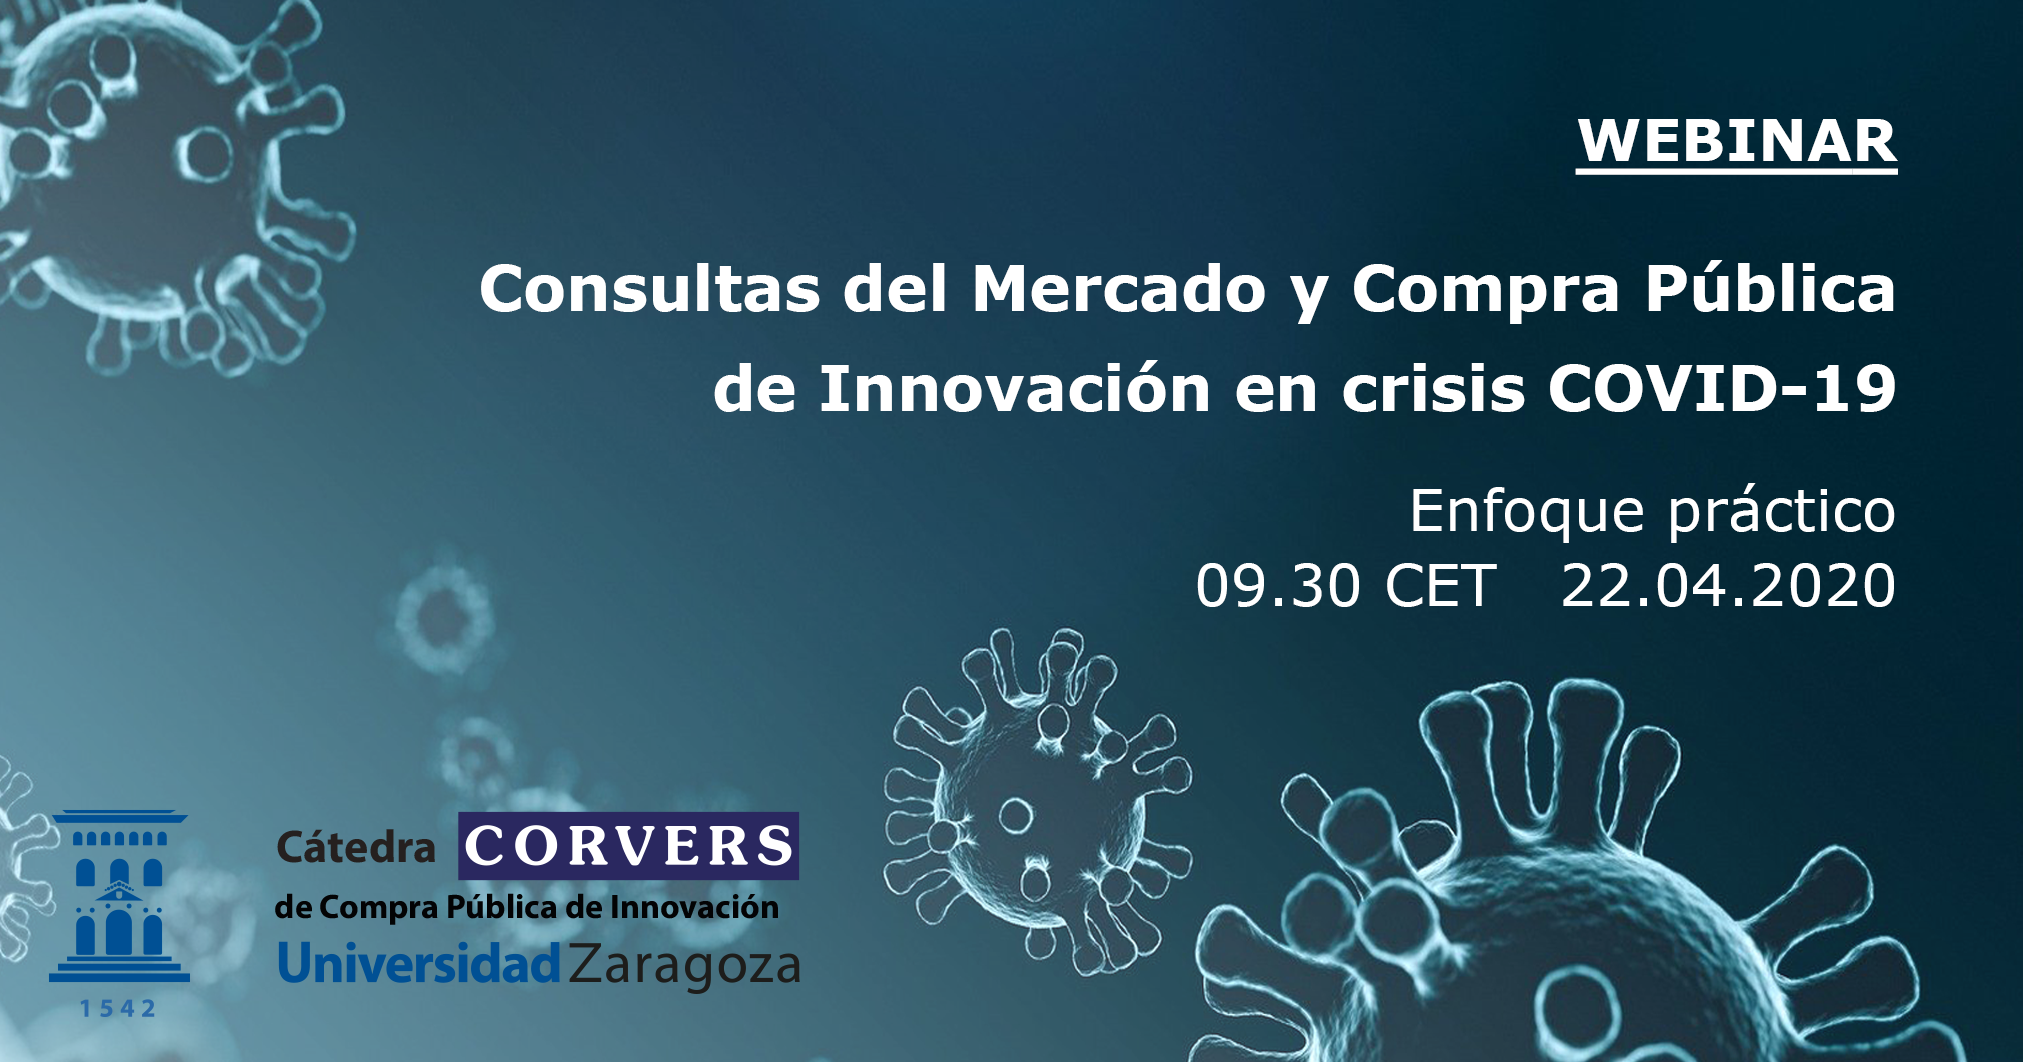 Webinar gratuito sobre Consultas del Mercado y Compra Pública de Innovación en crisis COVID-19